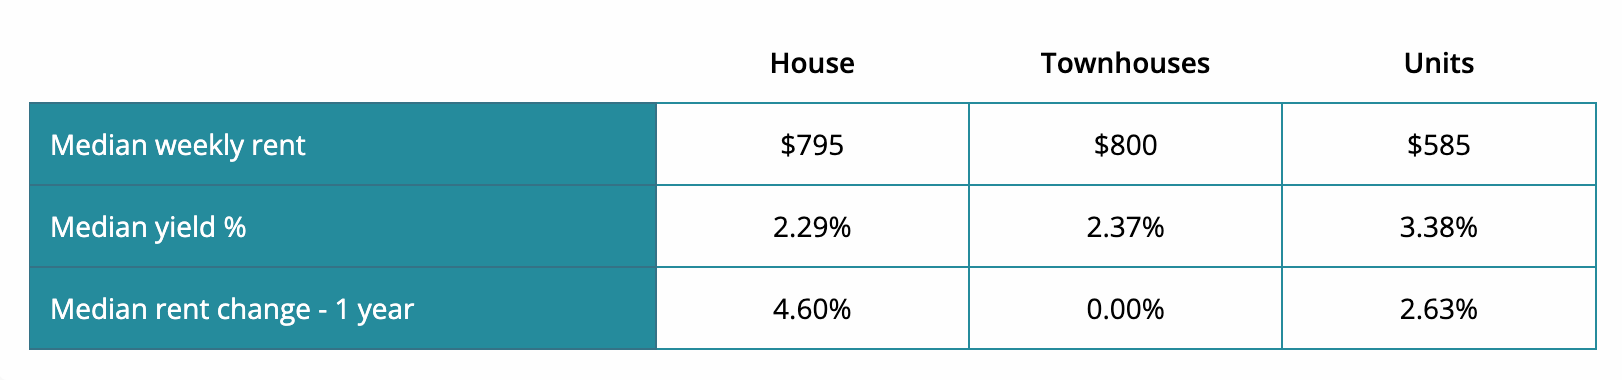 (Source: Real Estate Investar) Table of median rental statistics 